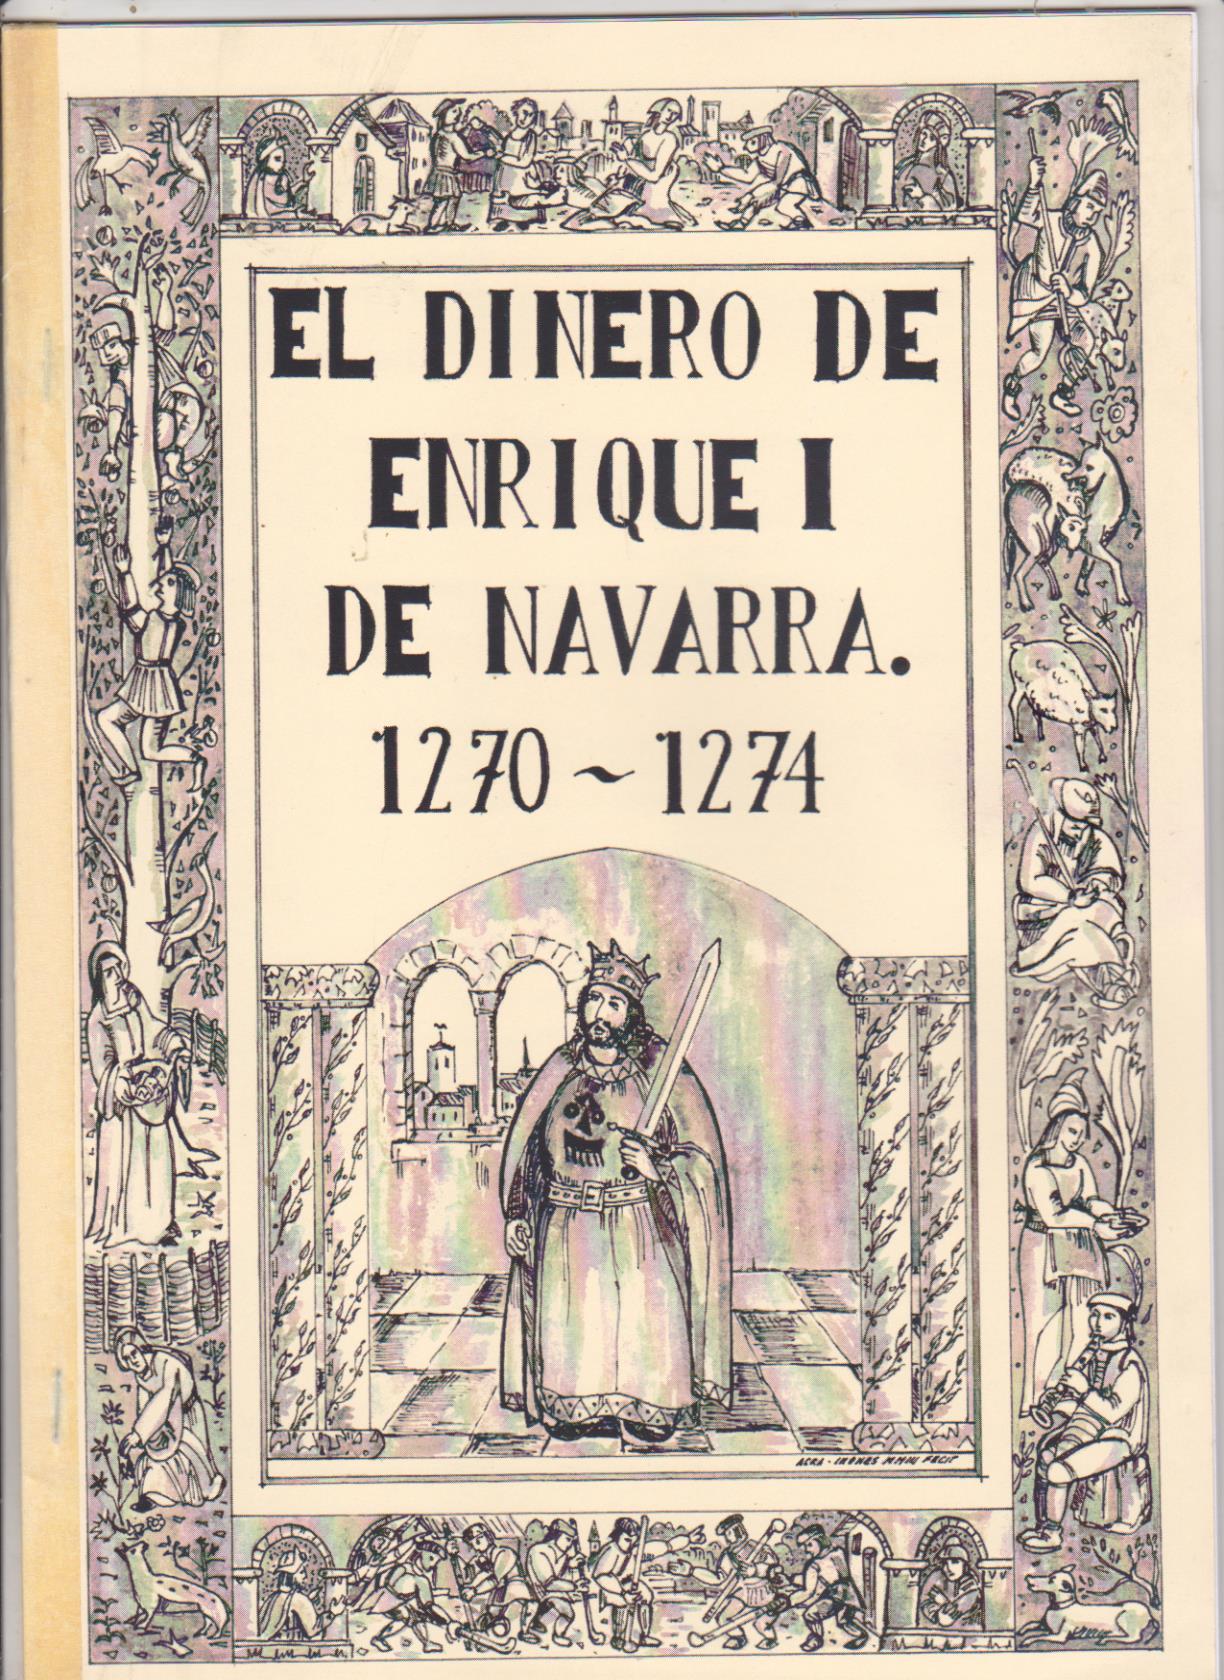 El Dinero de Enrique I de navarra 1270-1274. Se adjunta reproducción del citado dinero